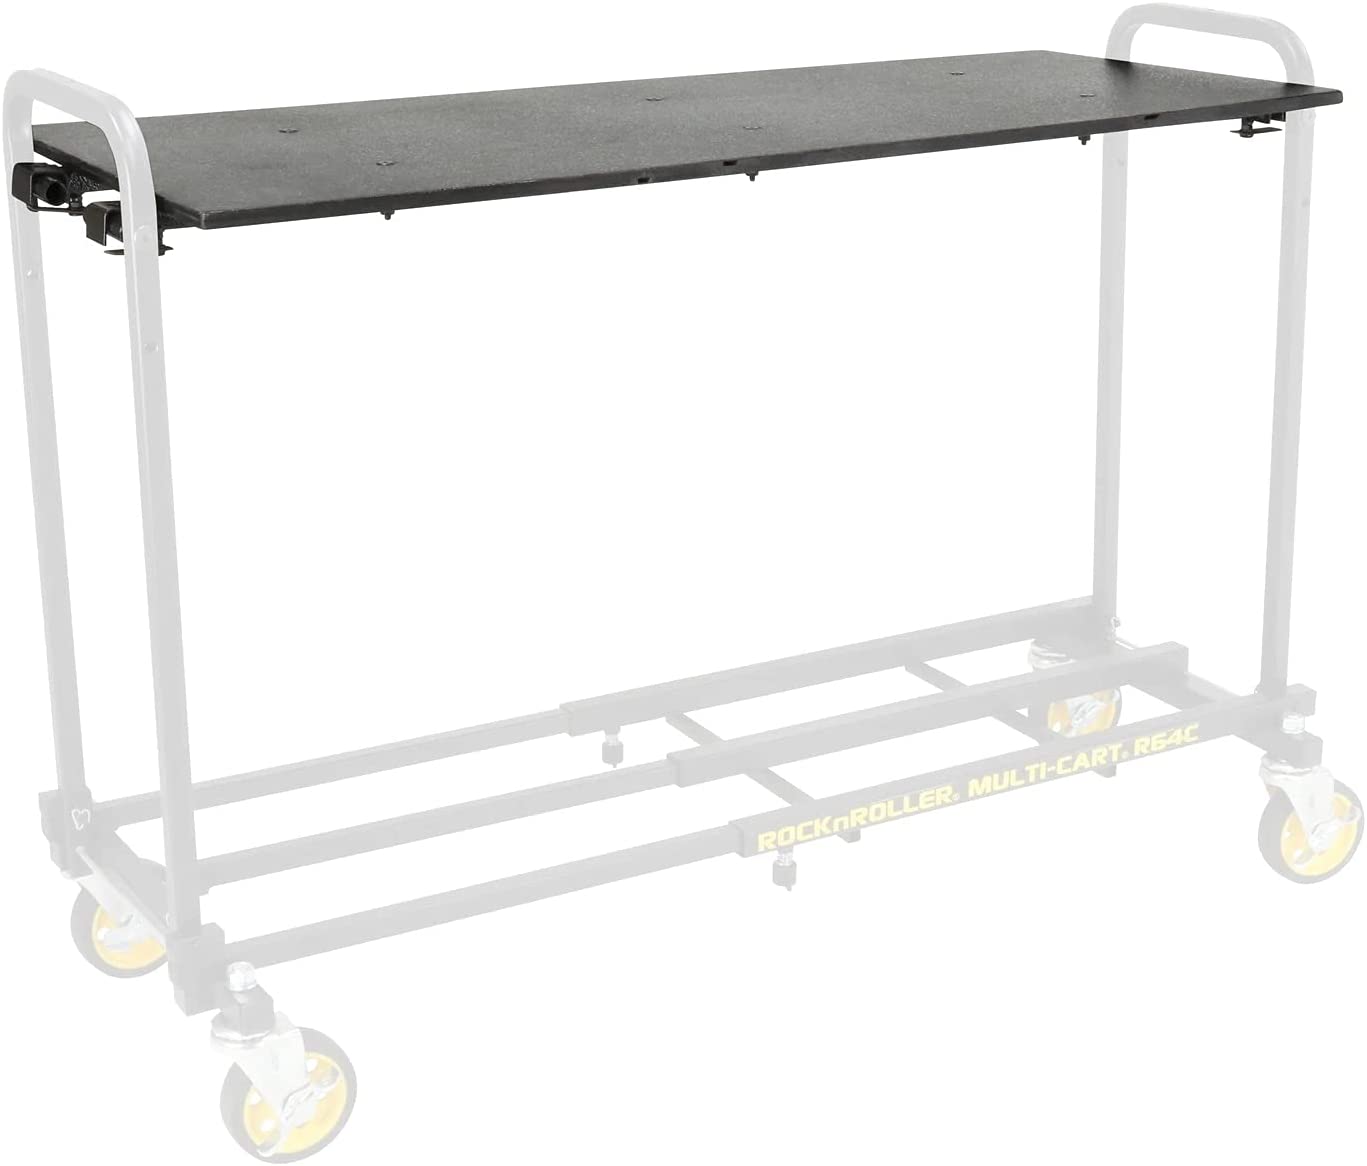 Rock-N-Roller Quick Set Shelf for R6 Multi-Carts